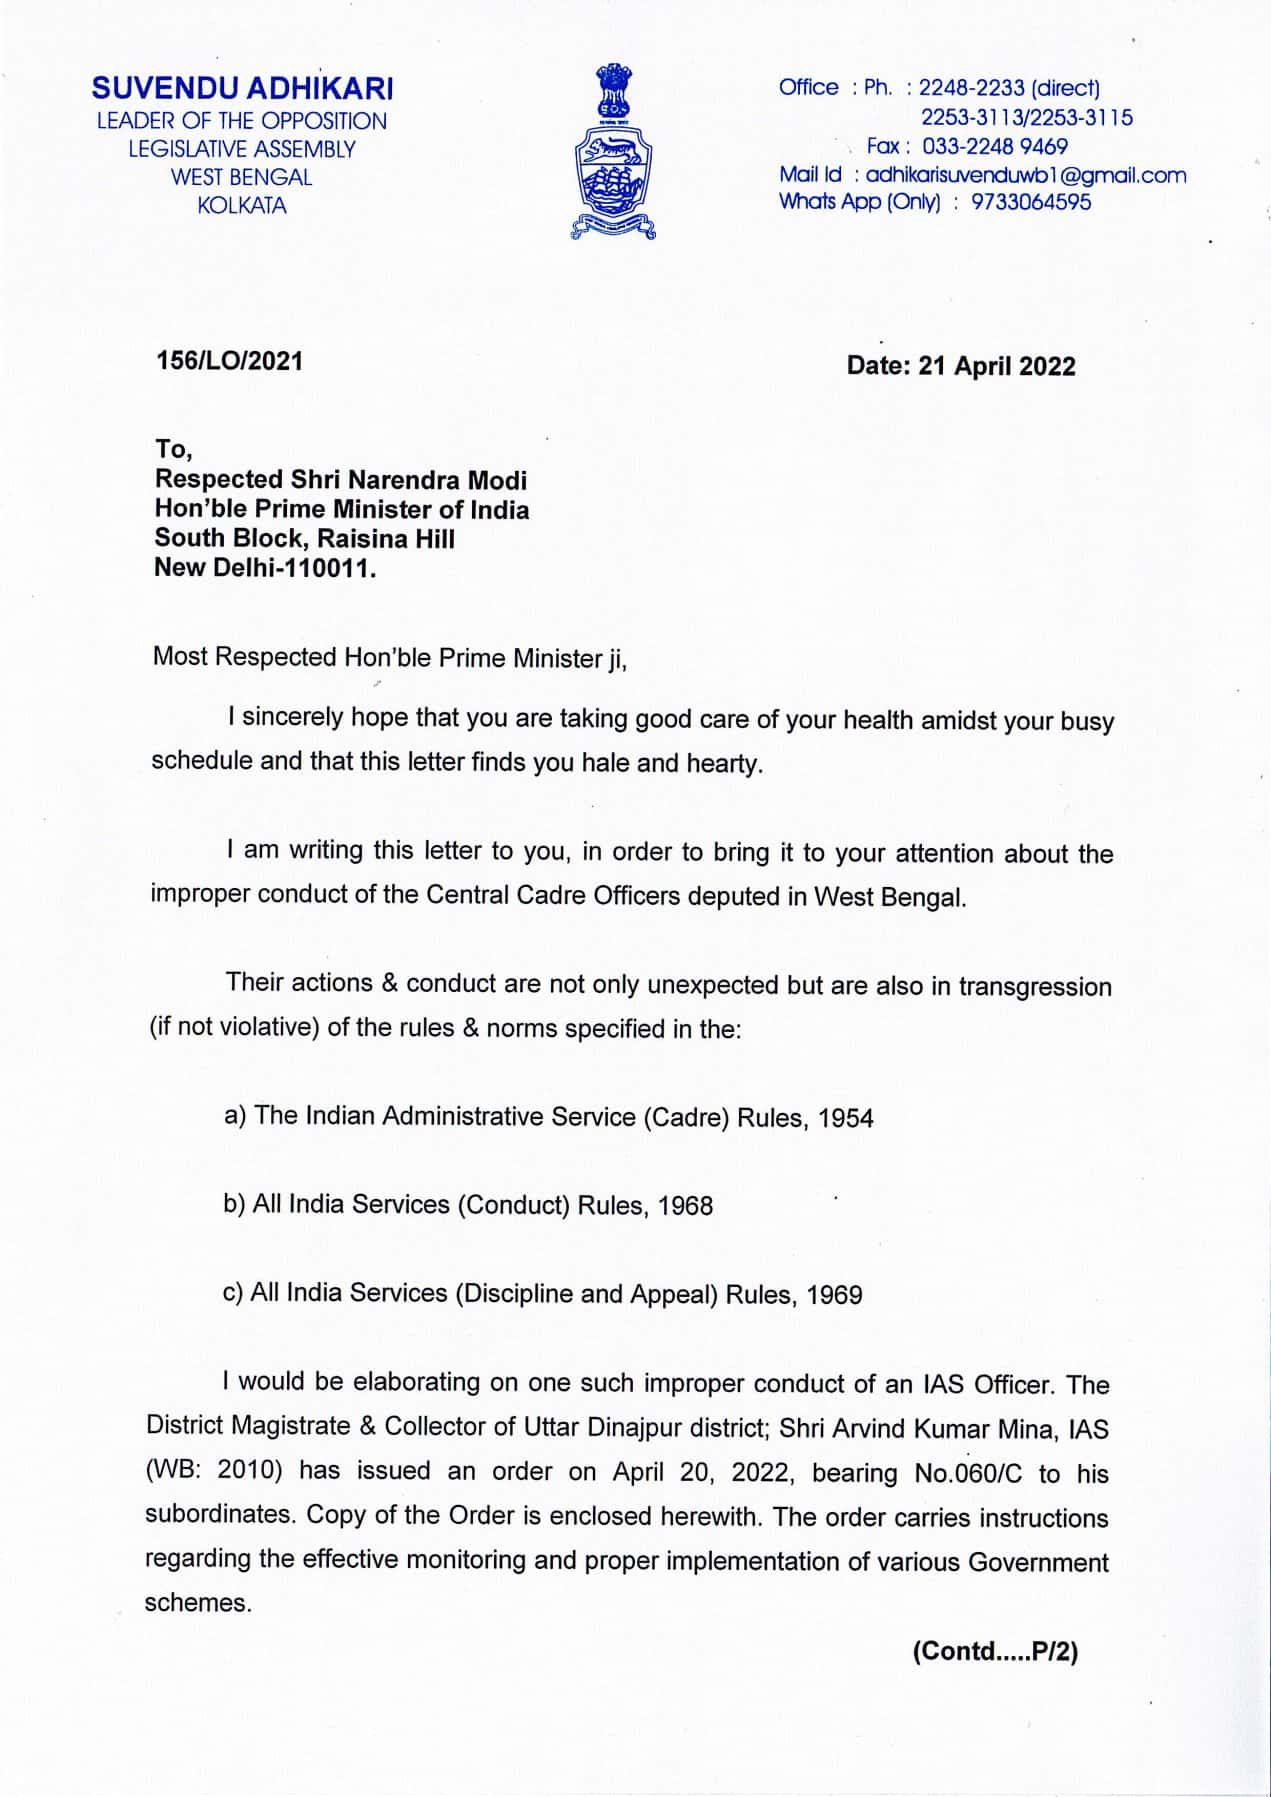 Suvendu Adhikari's letter to PM Modi complaining against the bureaucrats of Bengal